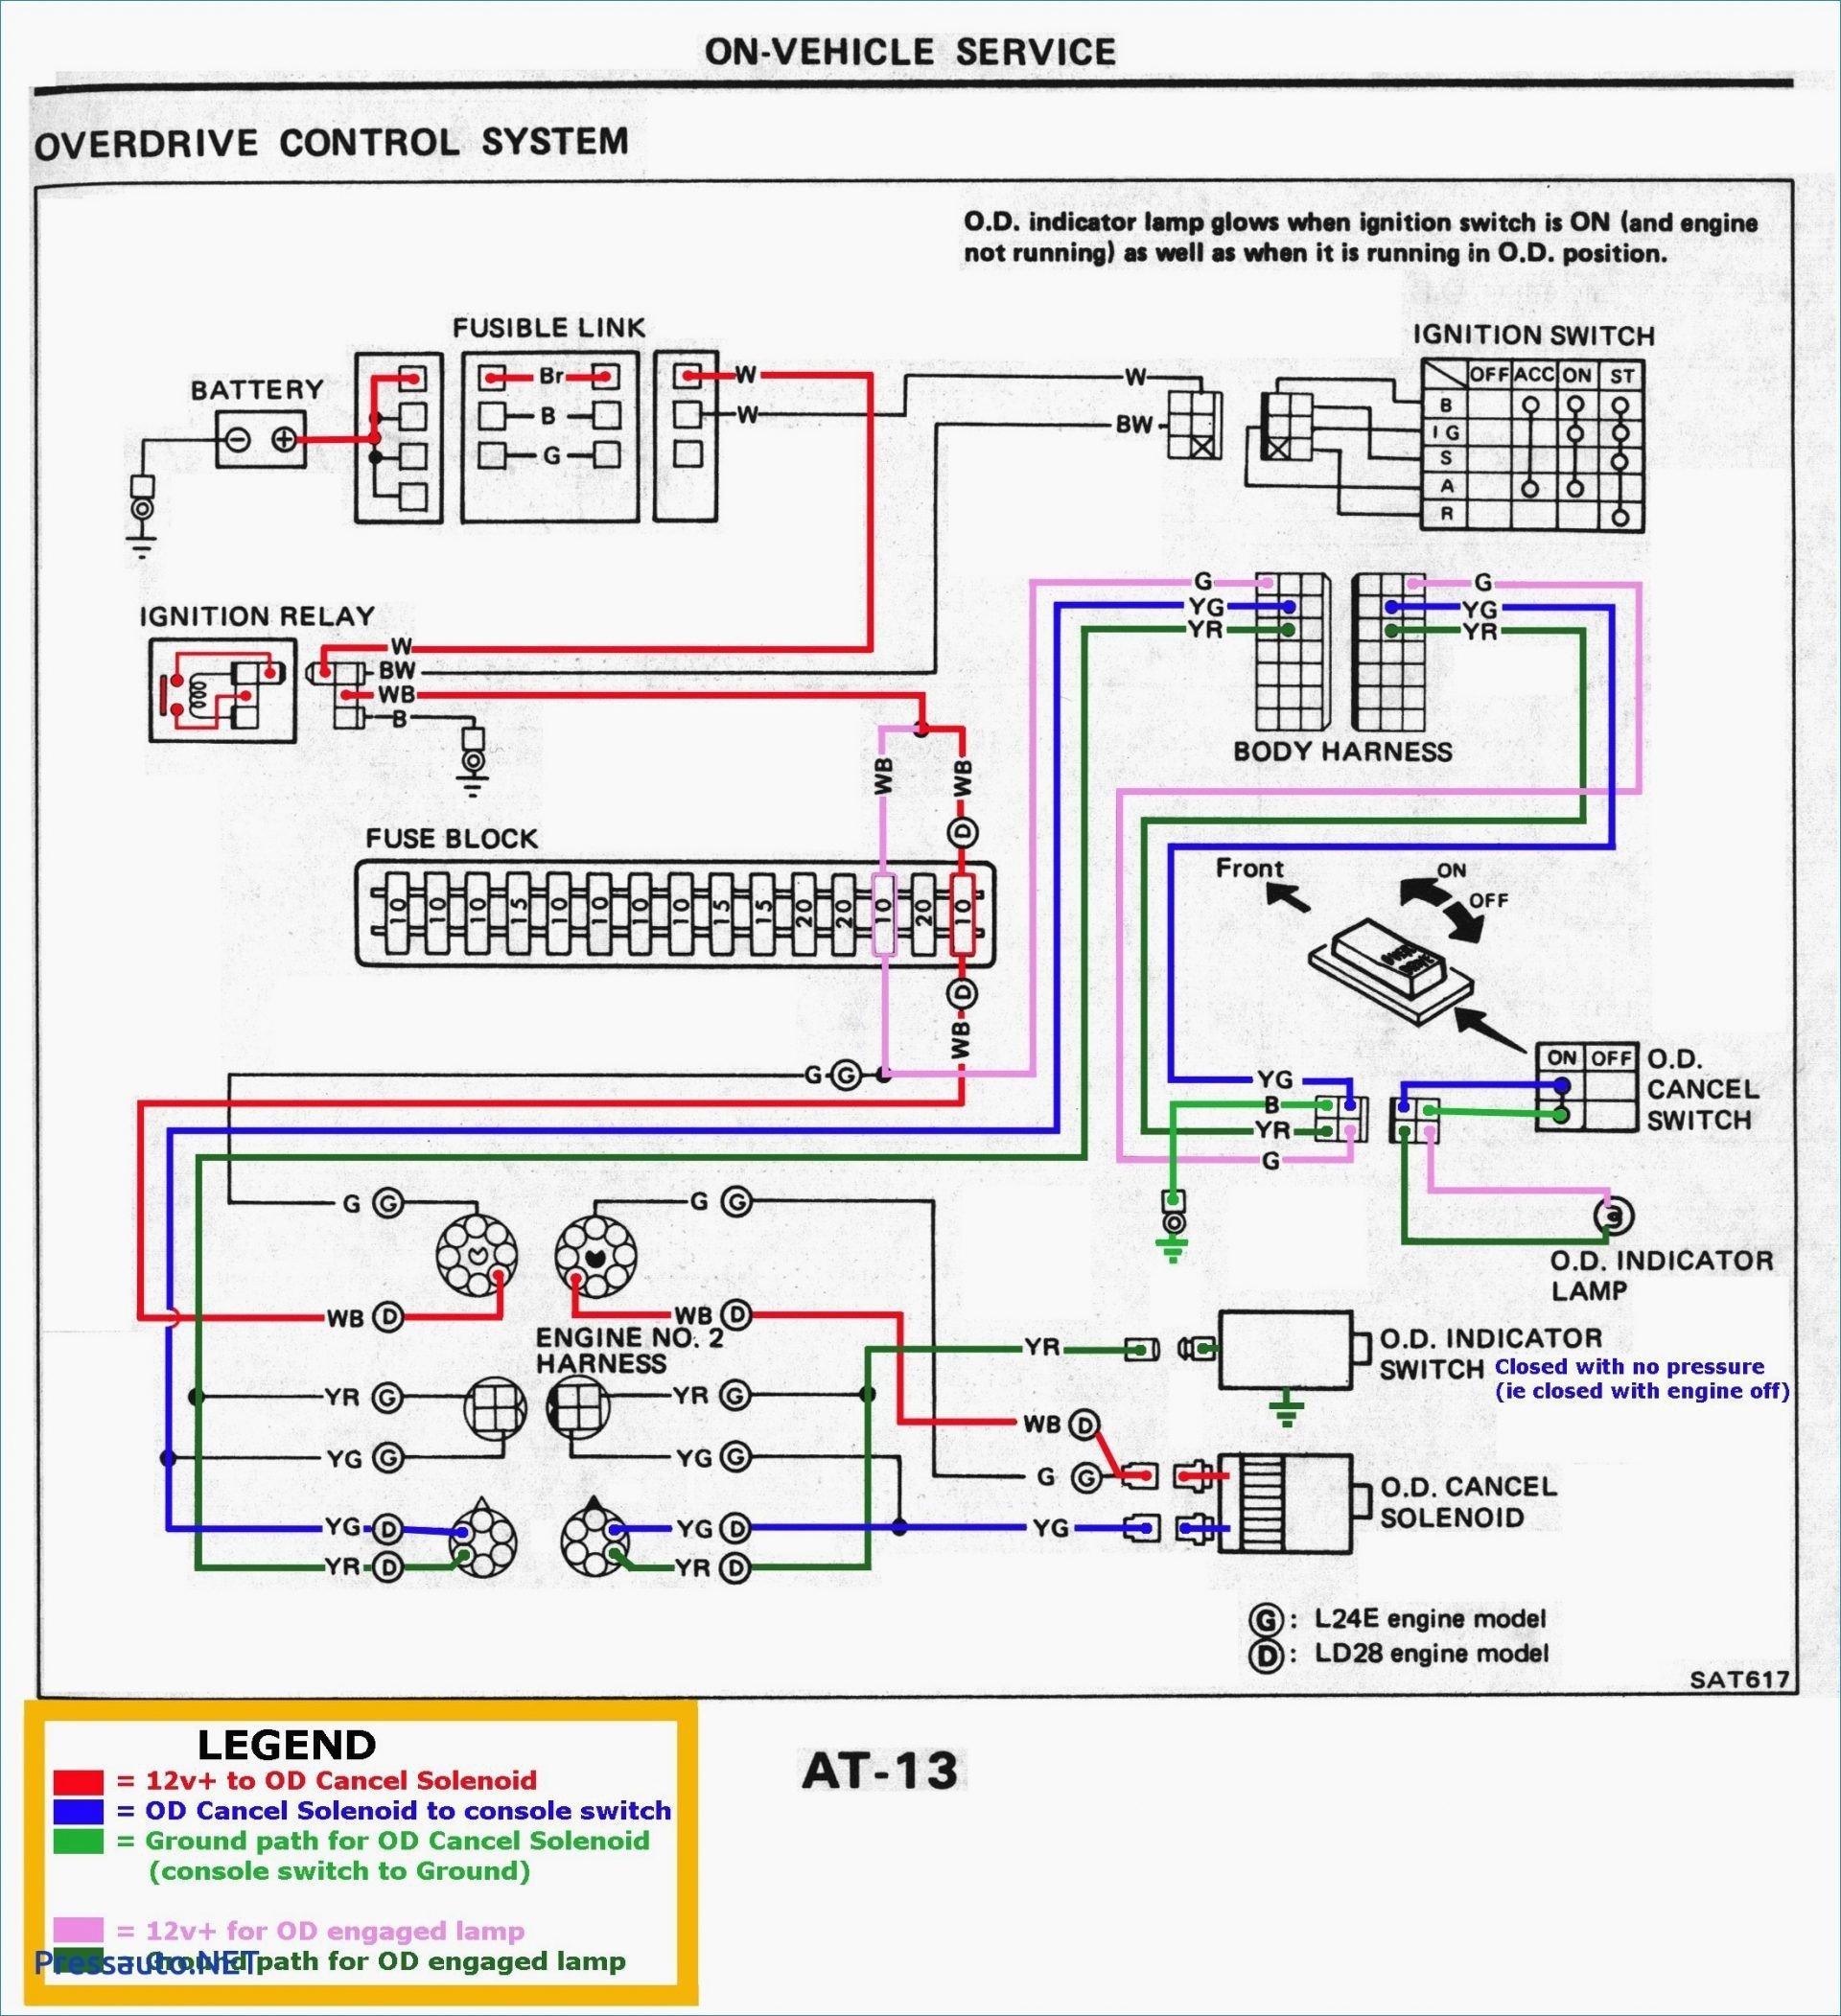 Kenwood Kdc 210U Wiring Diagram Kenwood Wiring Harness Diagram Kenwood Circuit Diagrams 1 Wiring